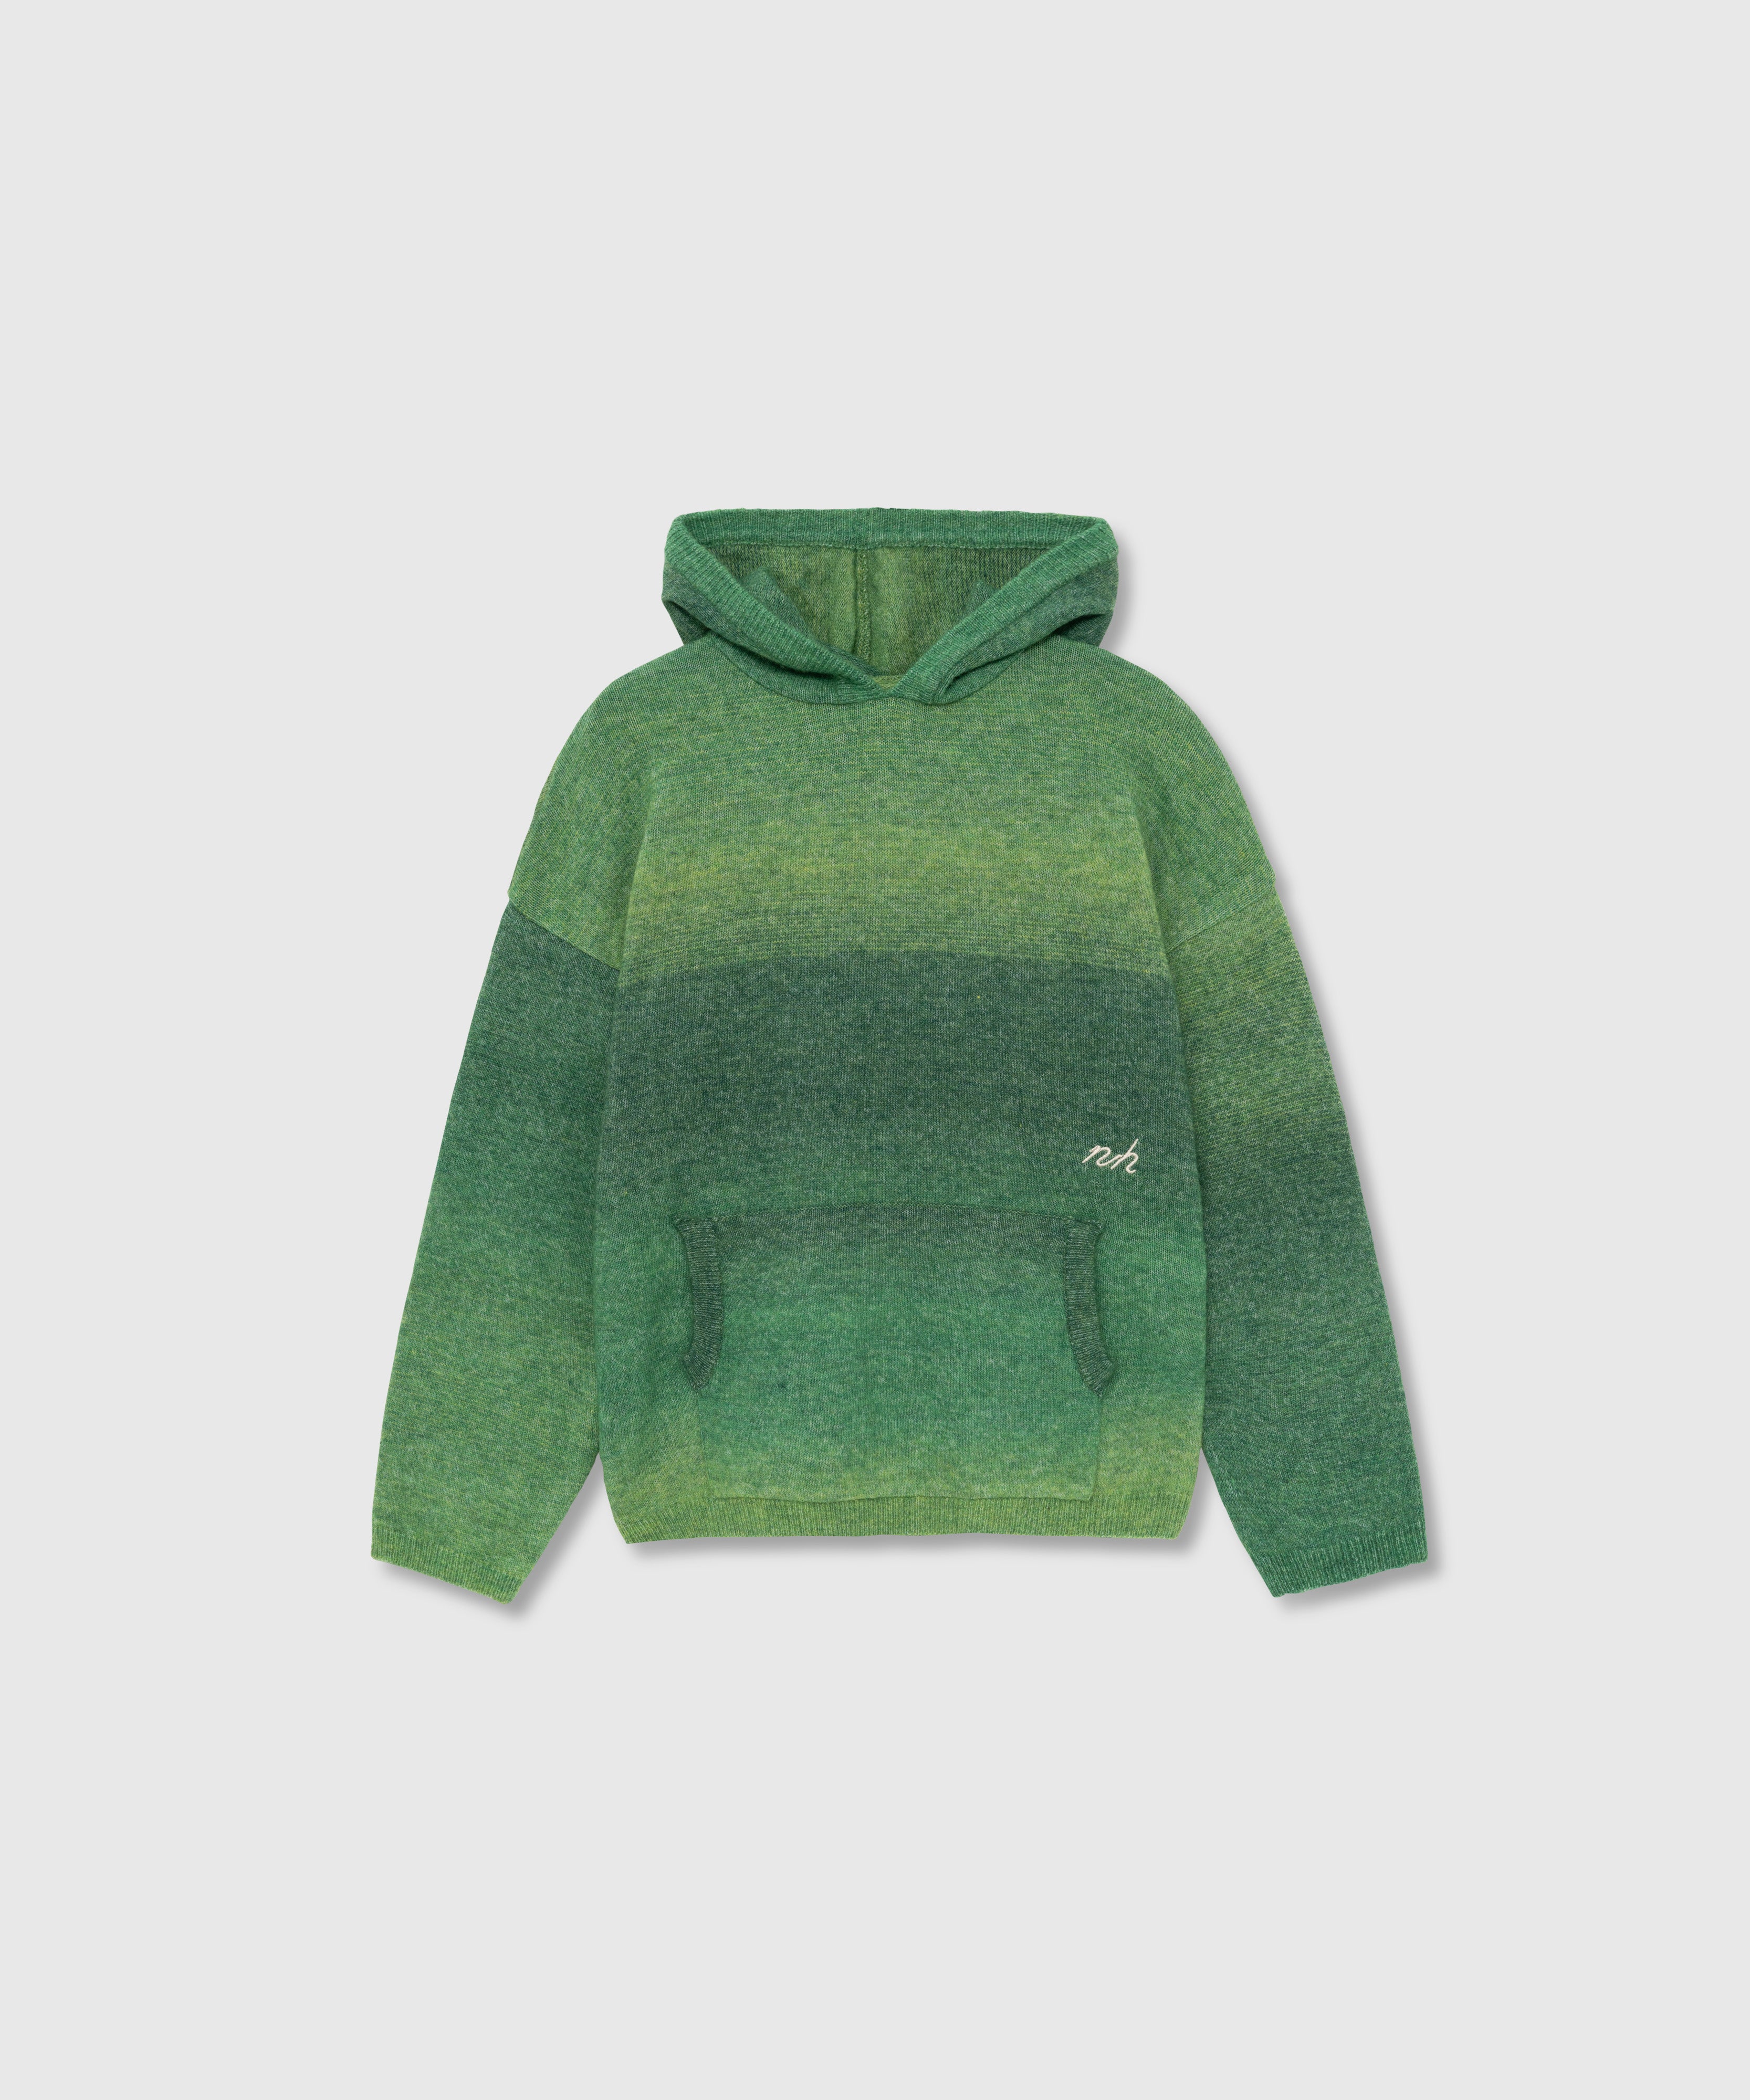 NIEEH gradient knitted hooded sweatshirt #BDJ35038